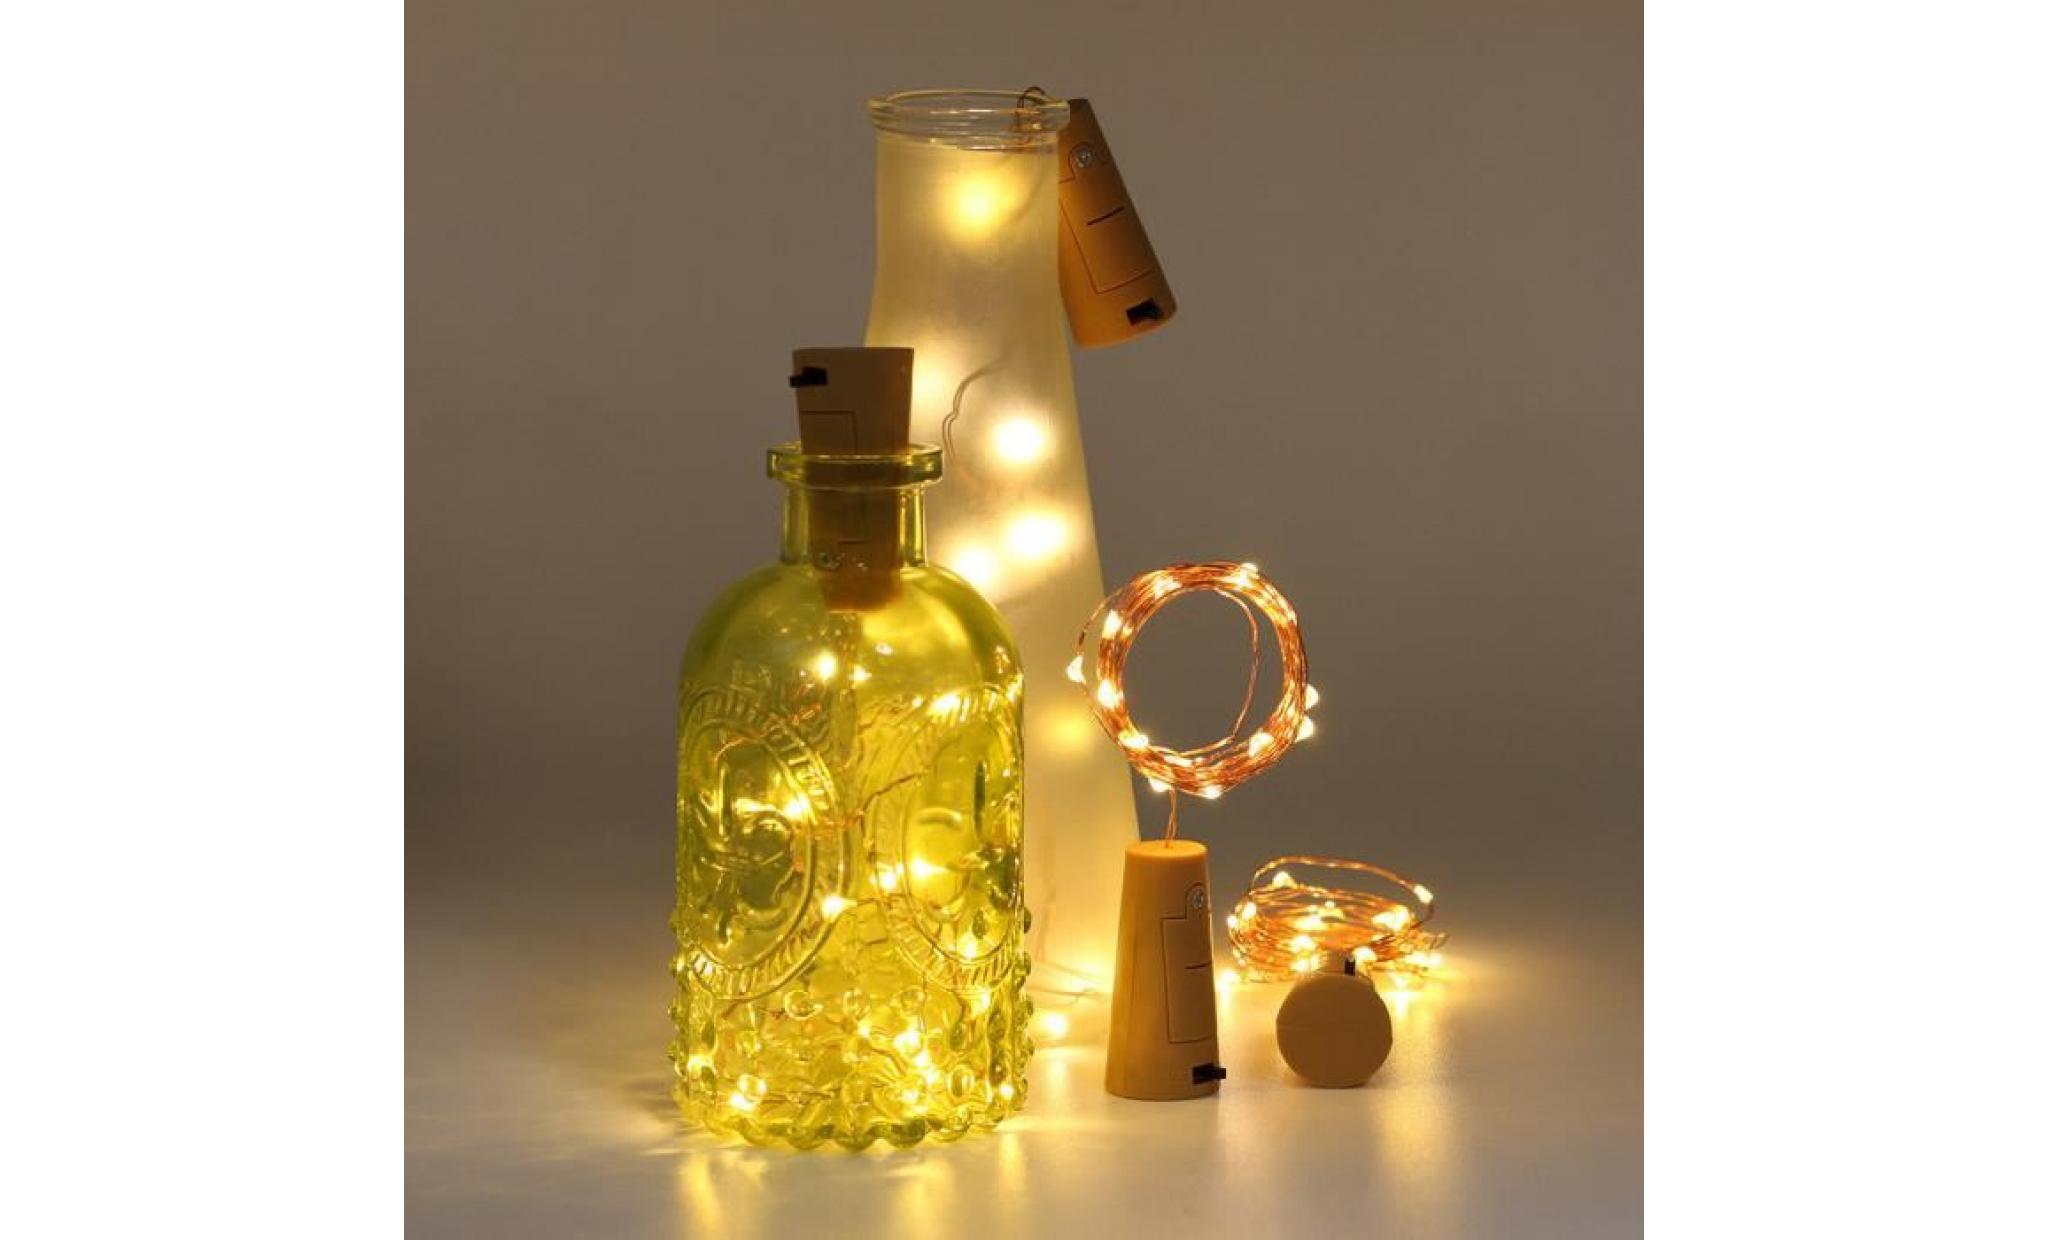 1m 10 led bottle lights cork shape for wine bottle string party romantic   @batangerr1236 pas cher